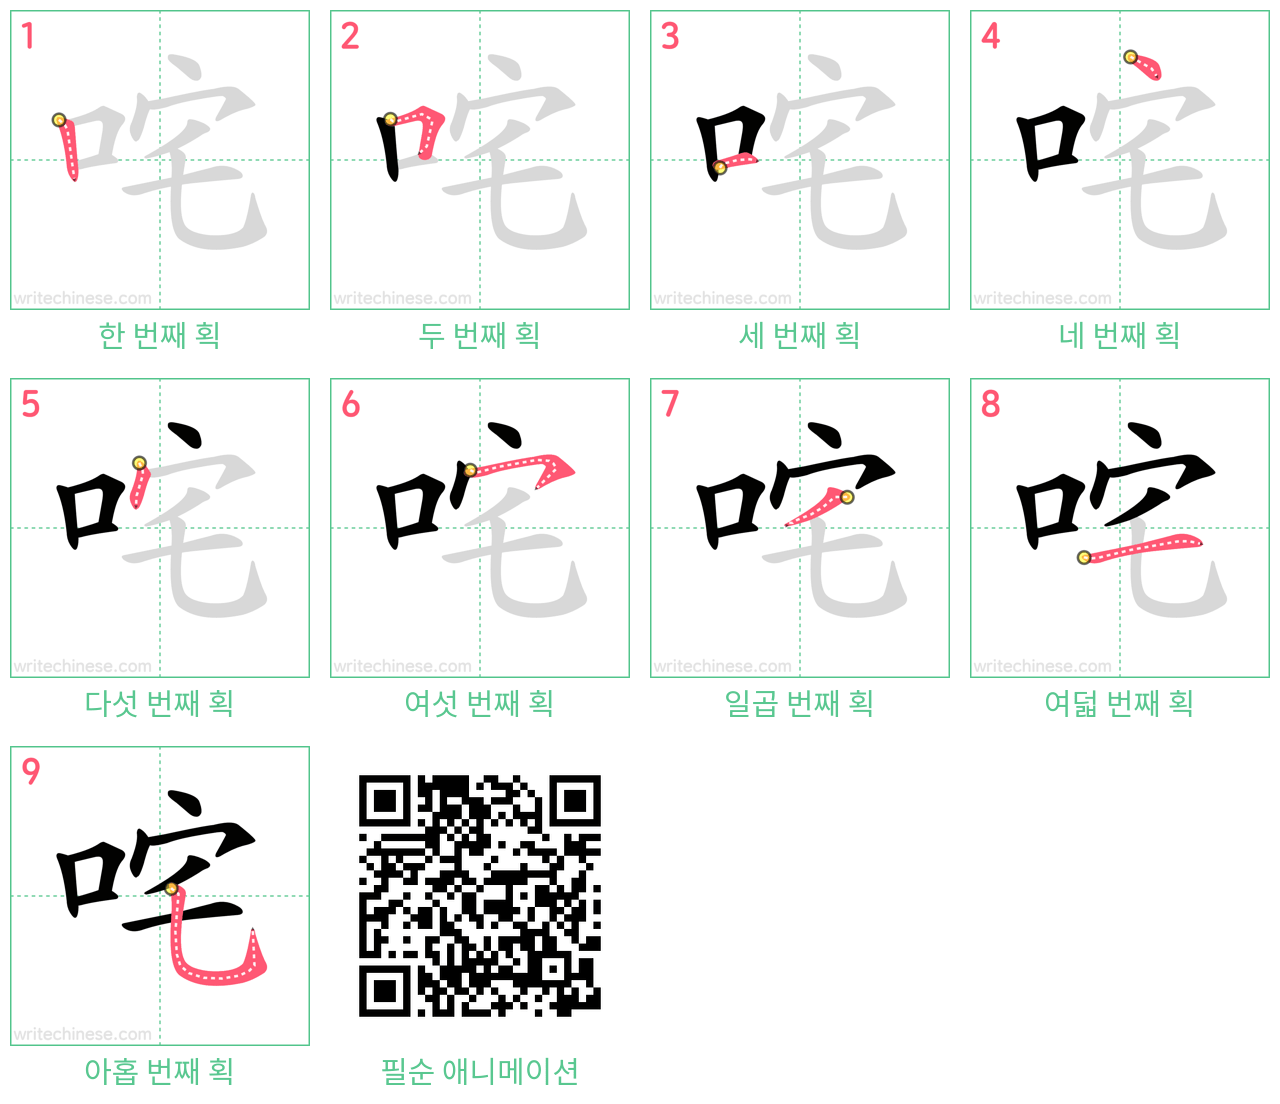 咤 step-by-step stroke order diagrams